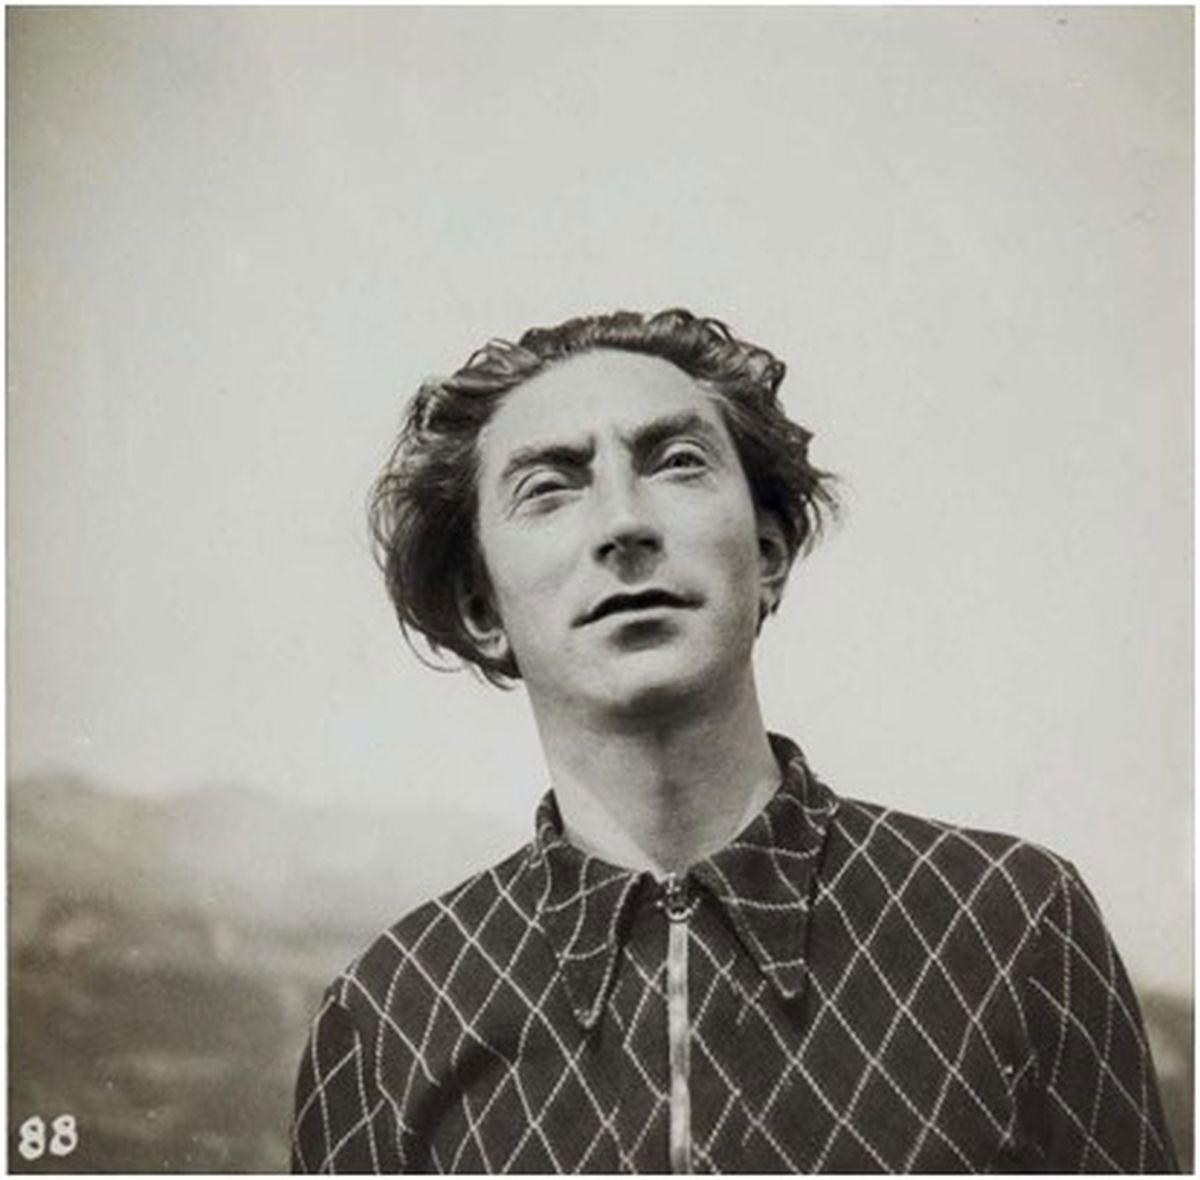 Poet Benjamin Fondane (1898, Jassy – 1944, Auschwitz-Birkenau)